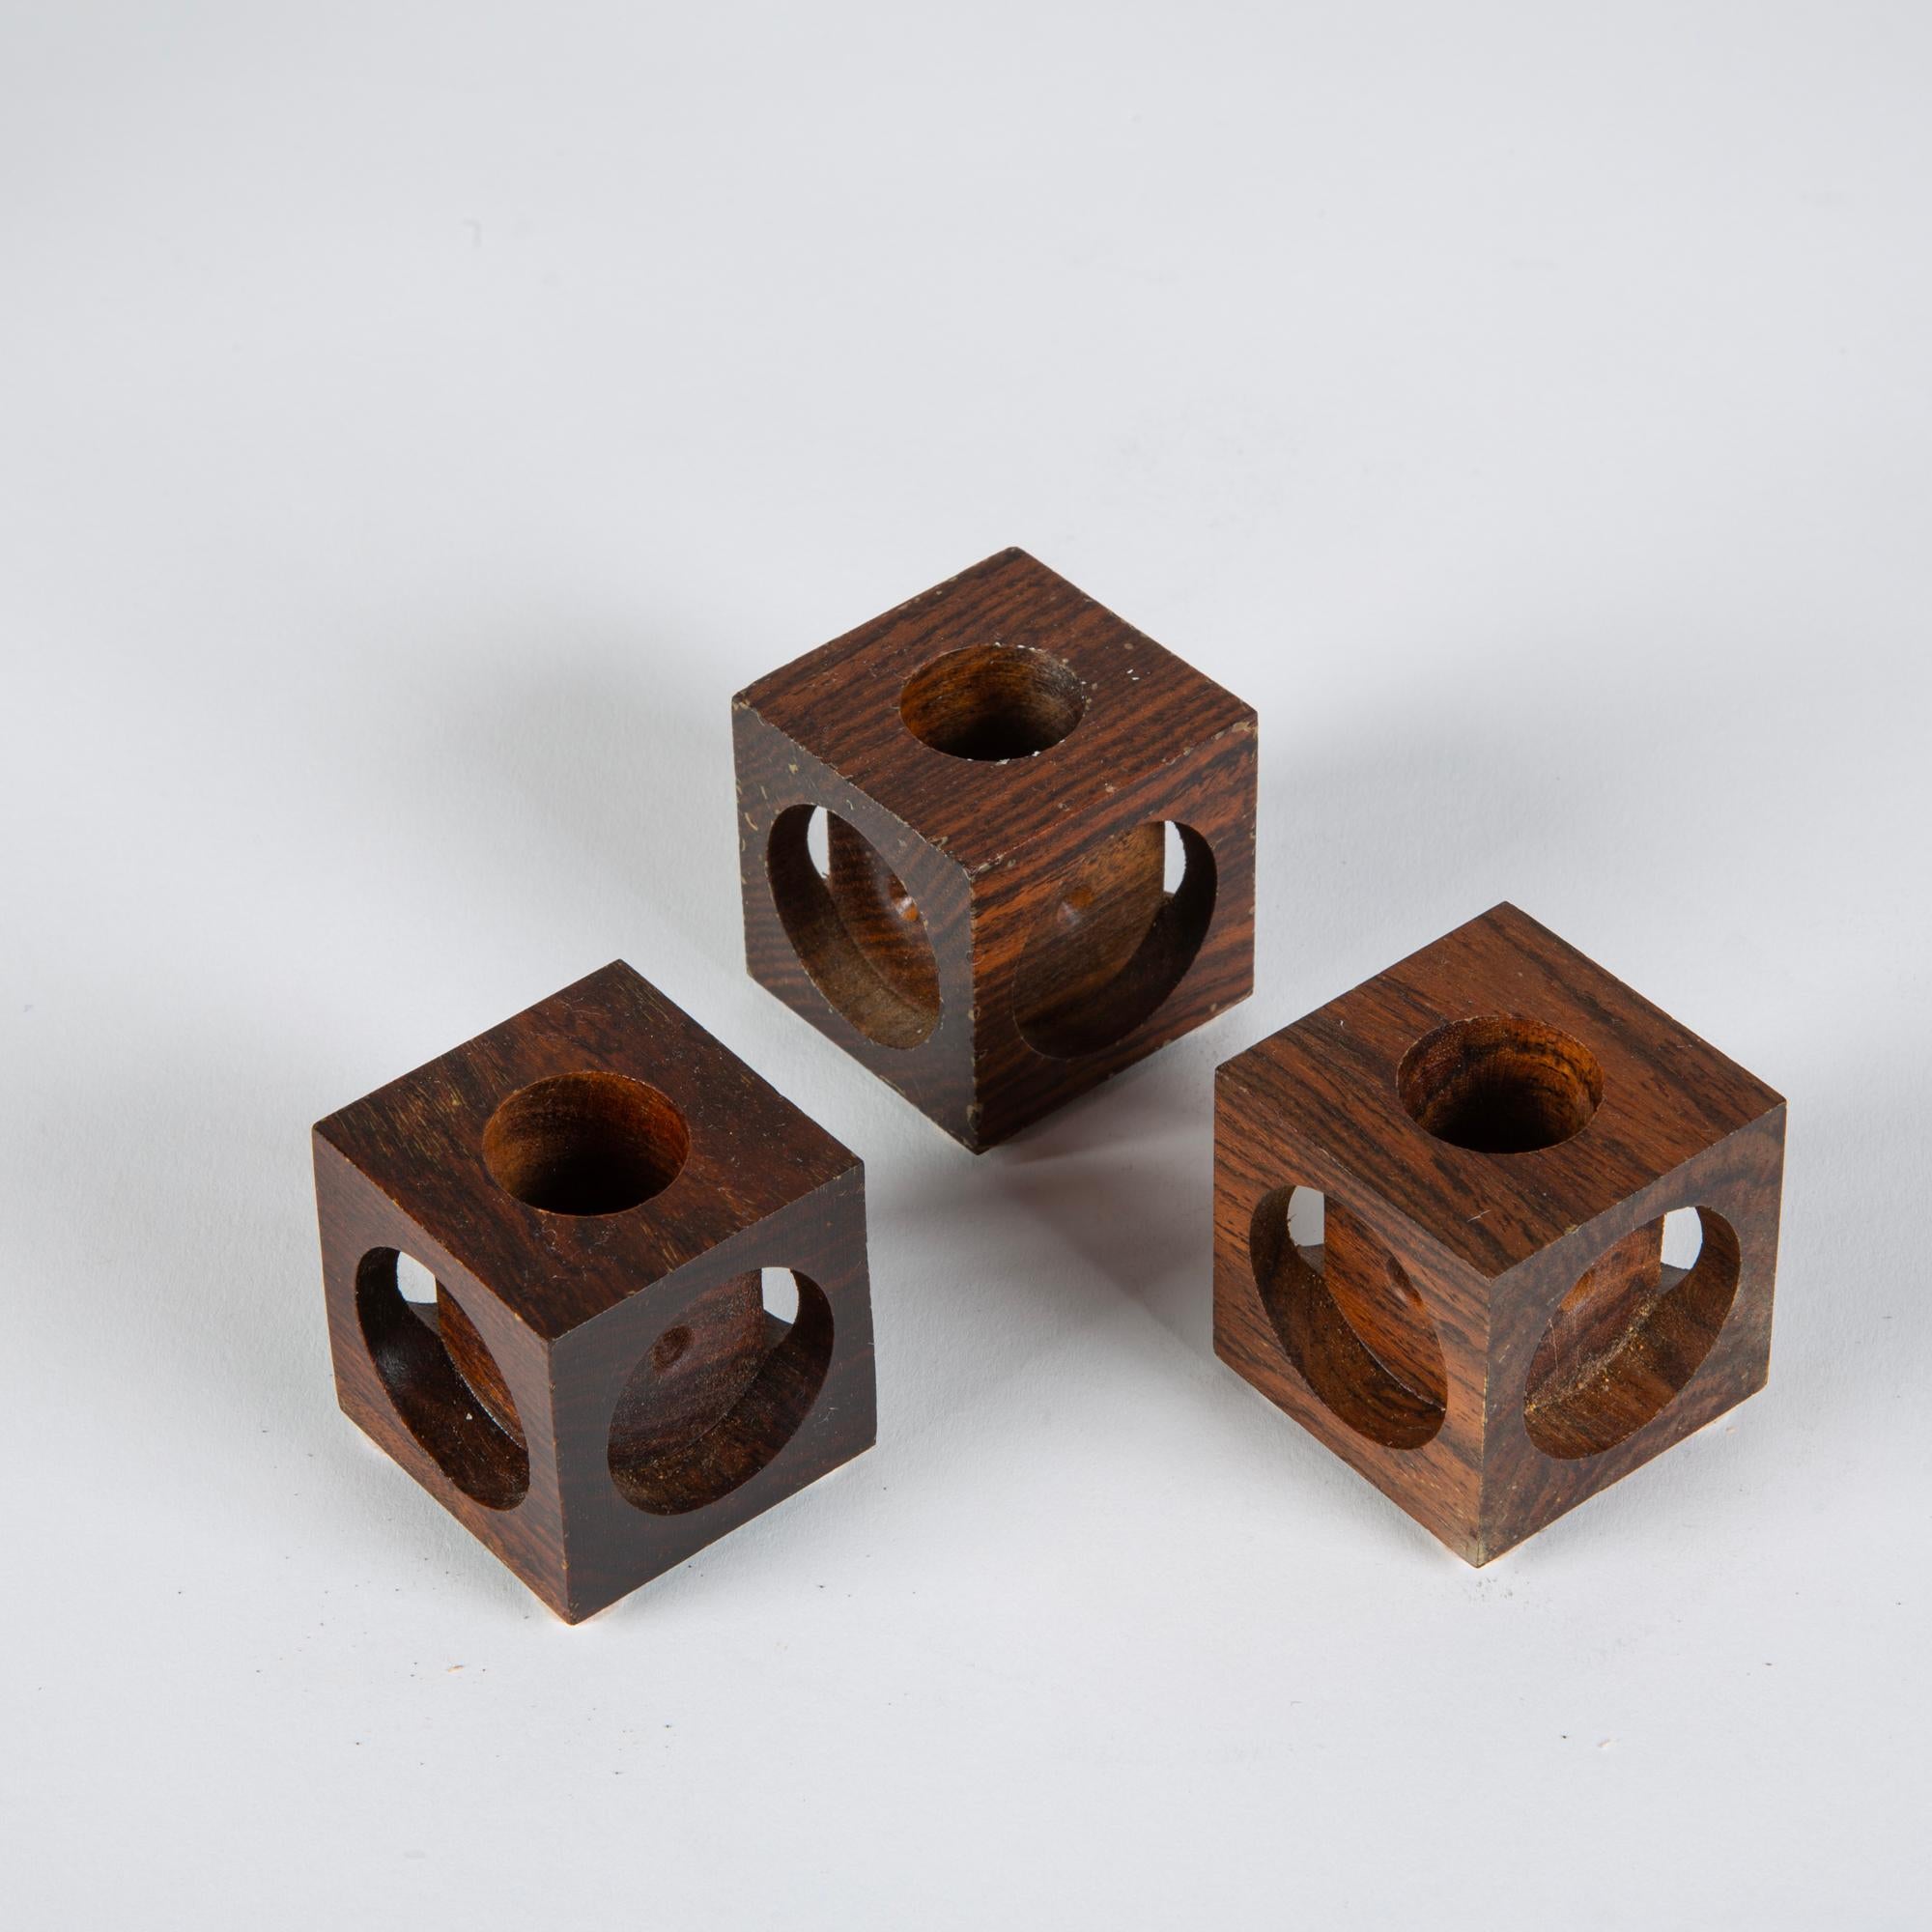 Satz von drei Don Shoemaker für Señal Kerzenhalter aus Cocobolo. Die handgeschnitzten, minimalistischen Rosenholz-Kerzenhalter weisen ein geometrisches Blockdesign mit kreisförmigen Ausschnitten auf jeder Seite auf. Die Oberseite jedes Blocks hat in